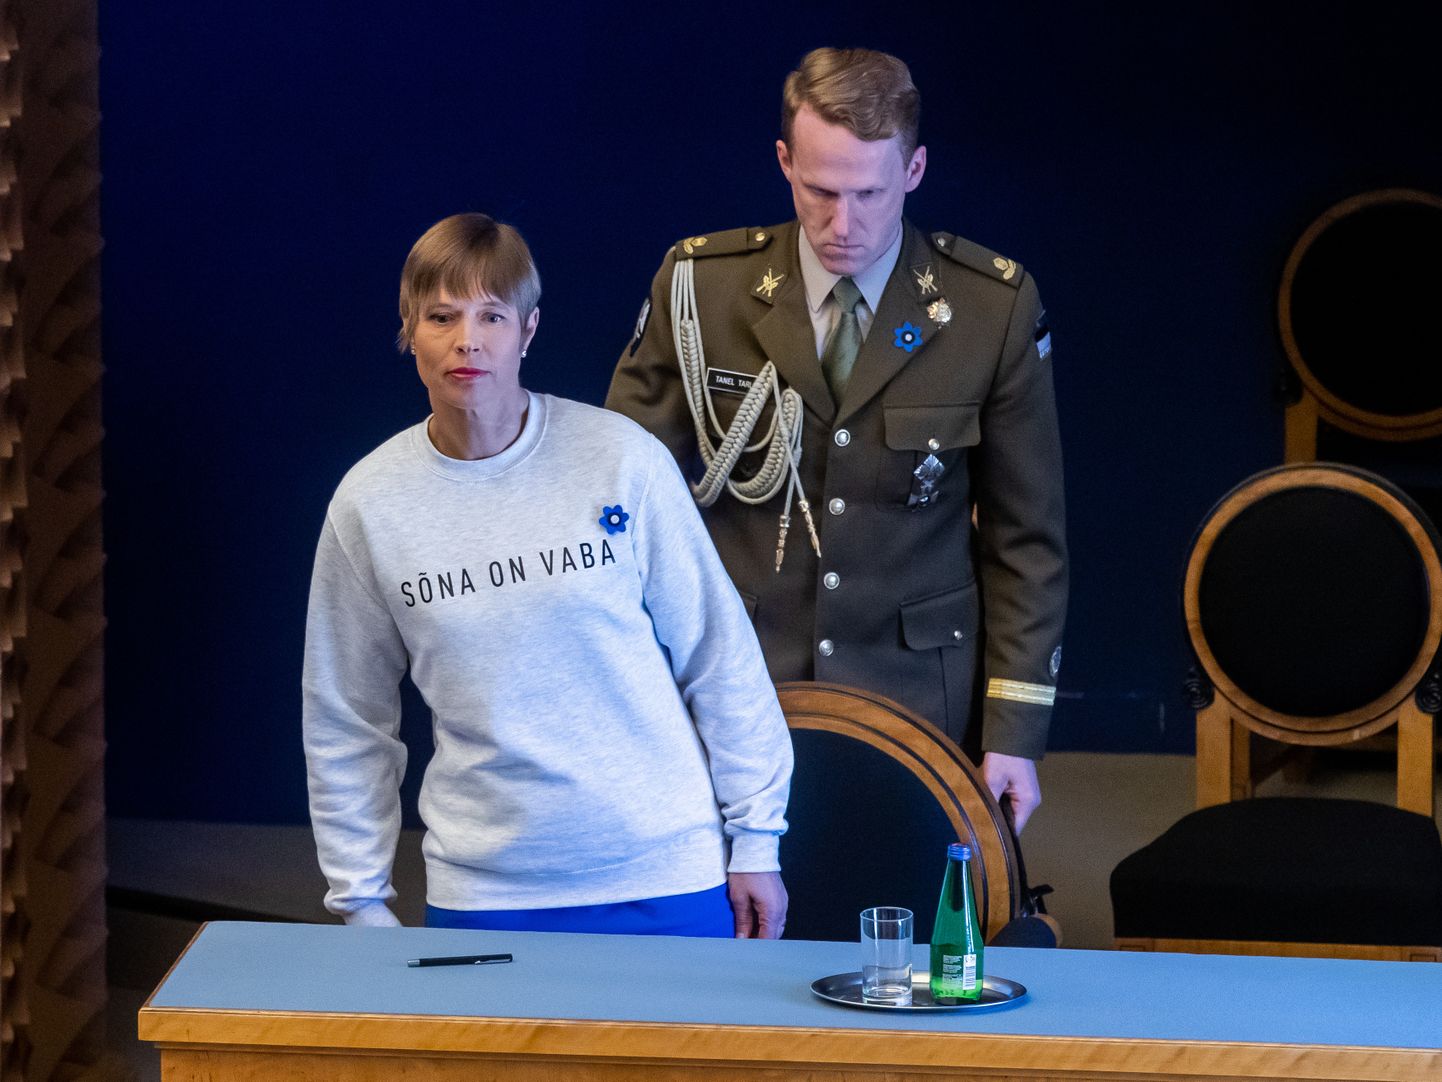 Riigikogu asendusliikmed ja uus valitsus andsid ametivande. President Kersti Kaljulaid «Sõna on vaba» sviitris.